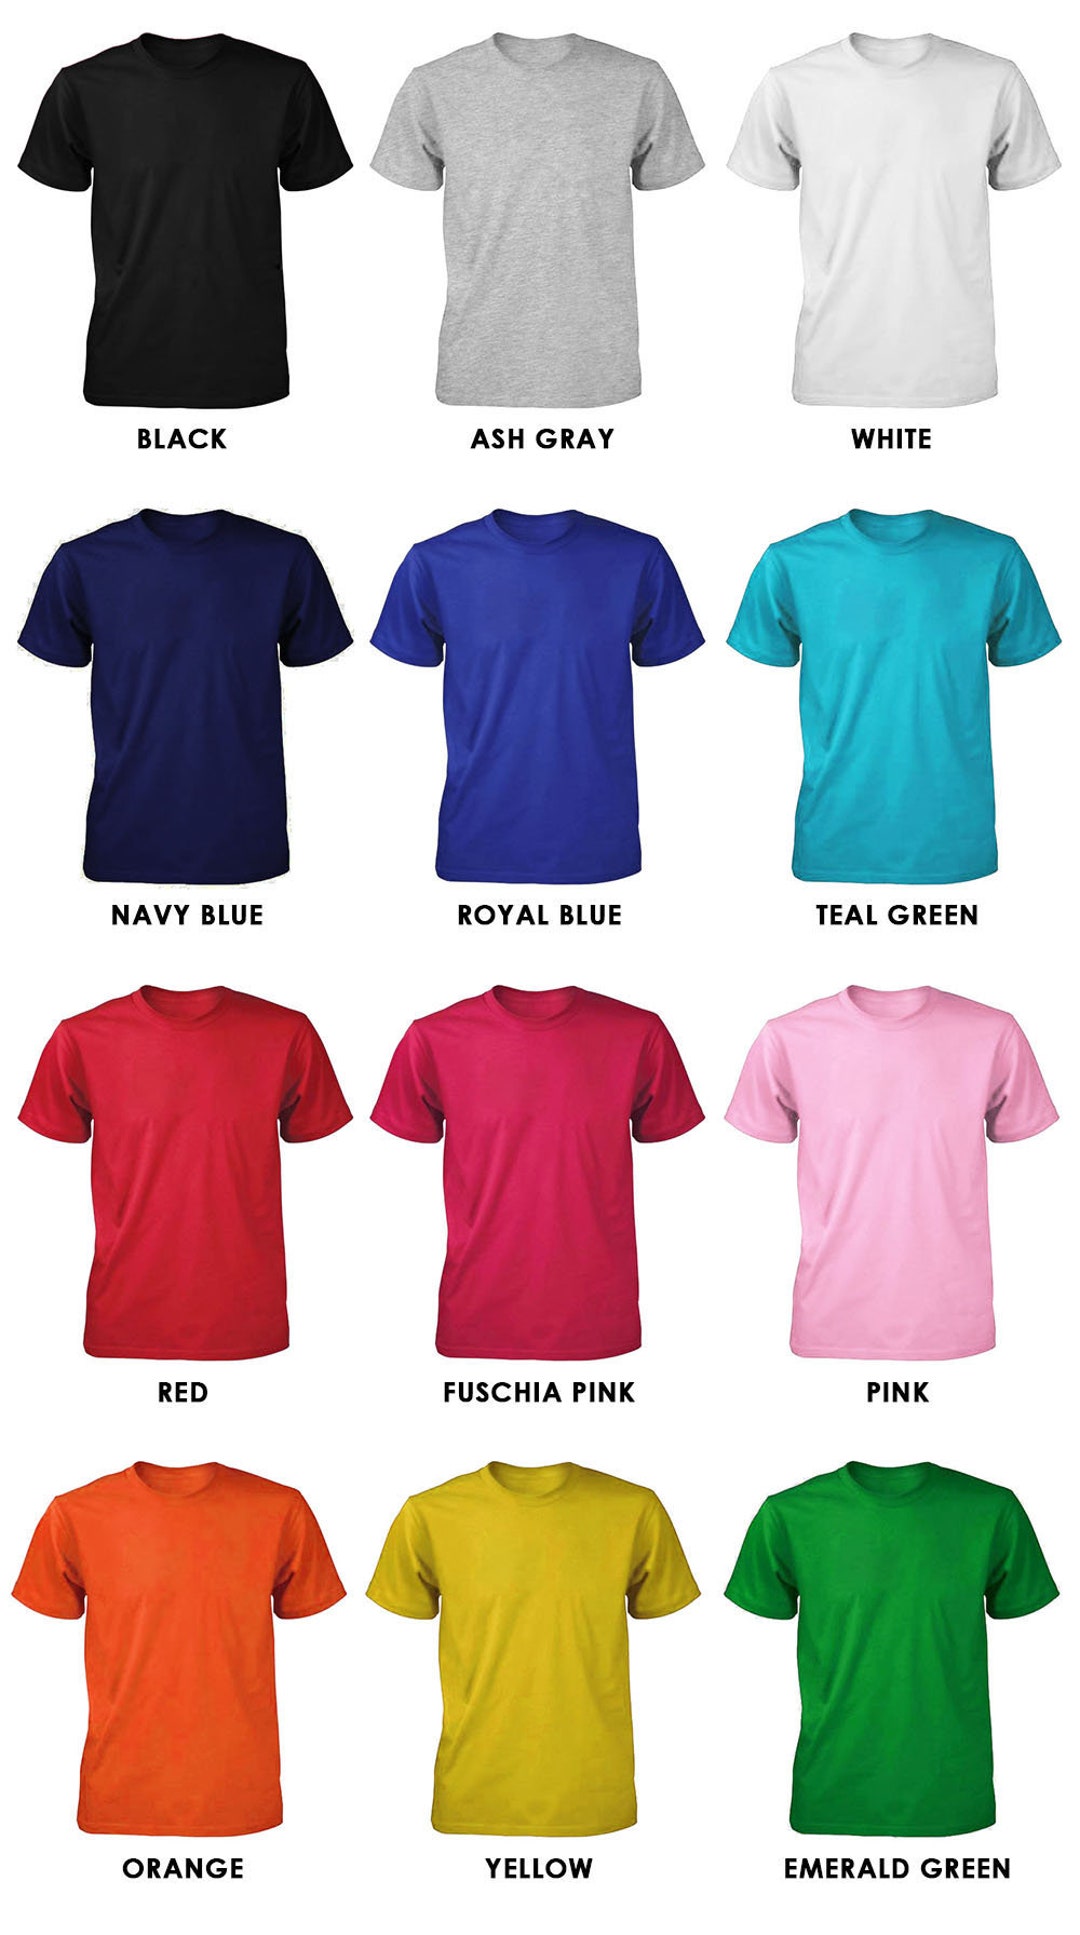 Det er billigt entanglement binde High Quality Plain T-shirts Wholesale Blank Shirts - Etsy